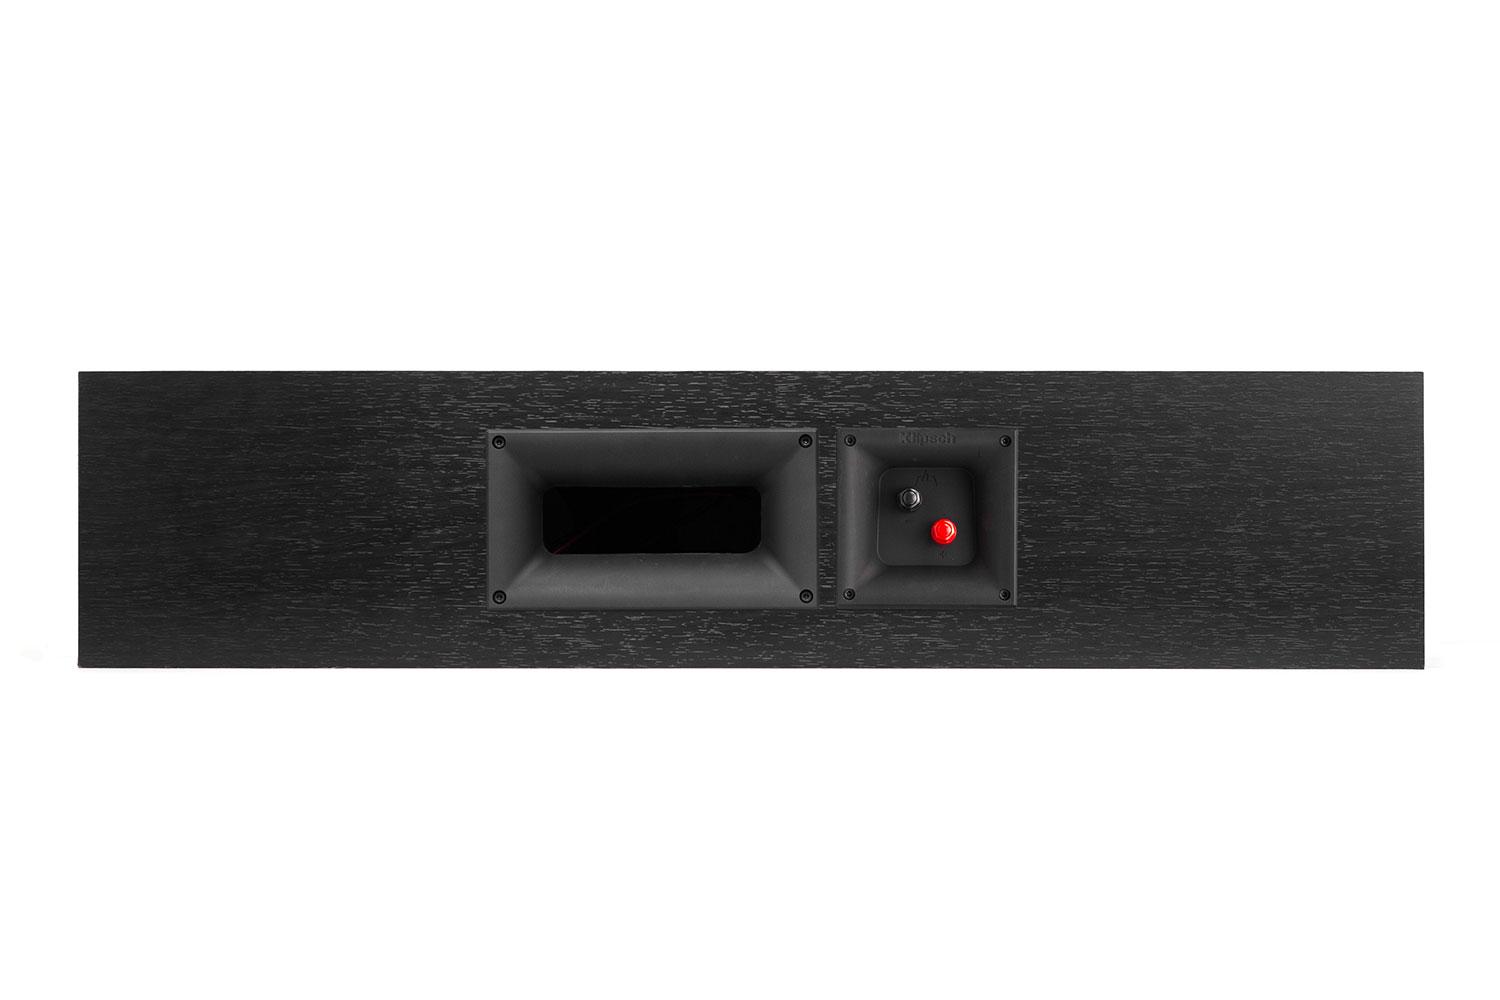 klipsch reference premier speaker system debuts at ces 2015 450c back